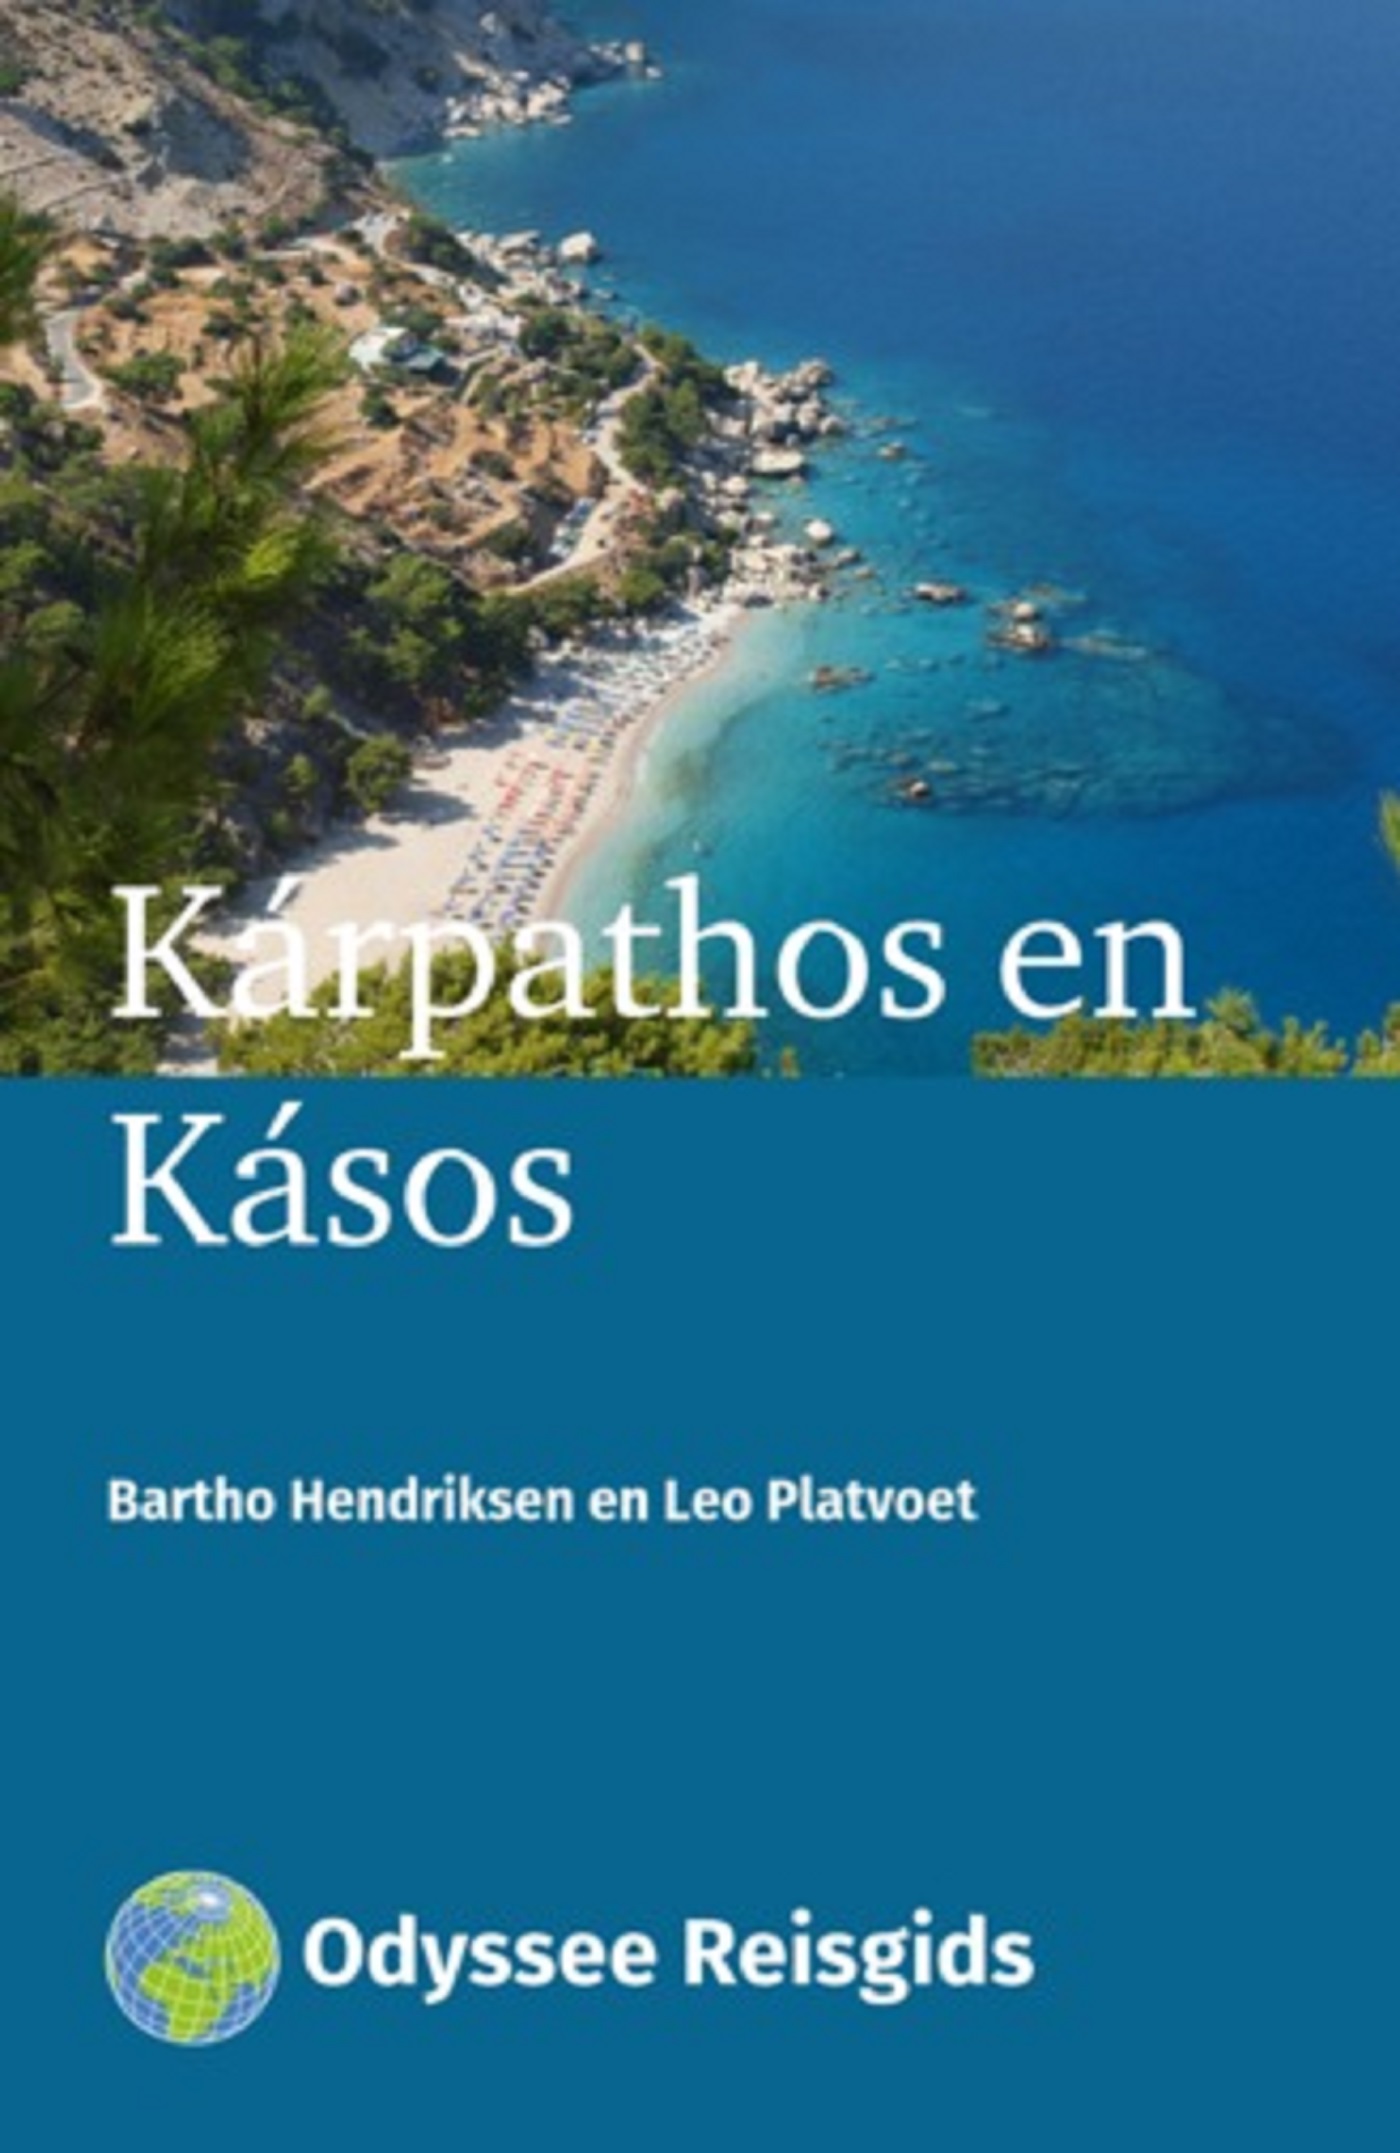 Krpathos en Ksos